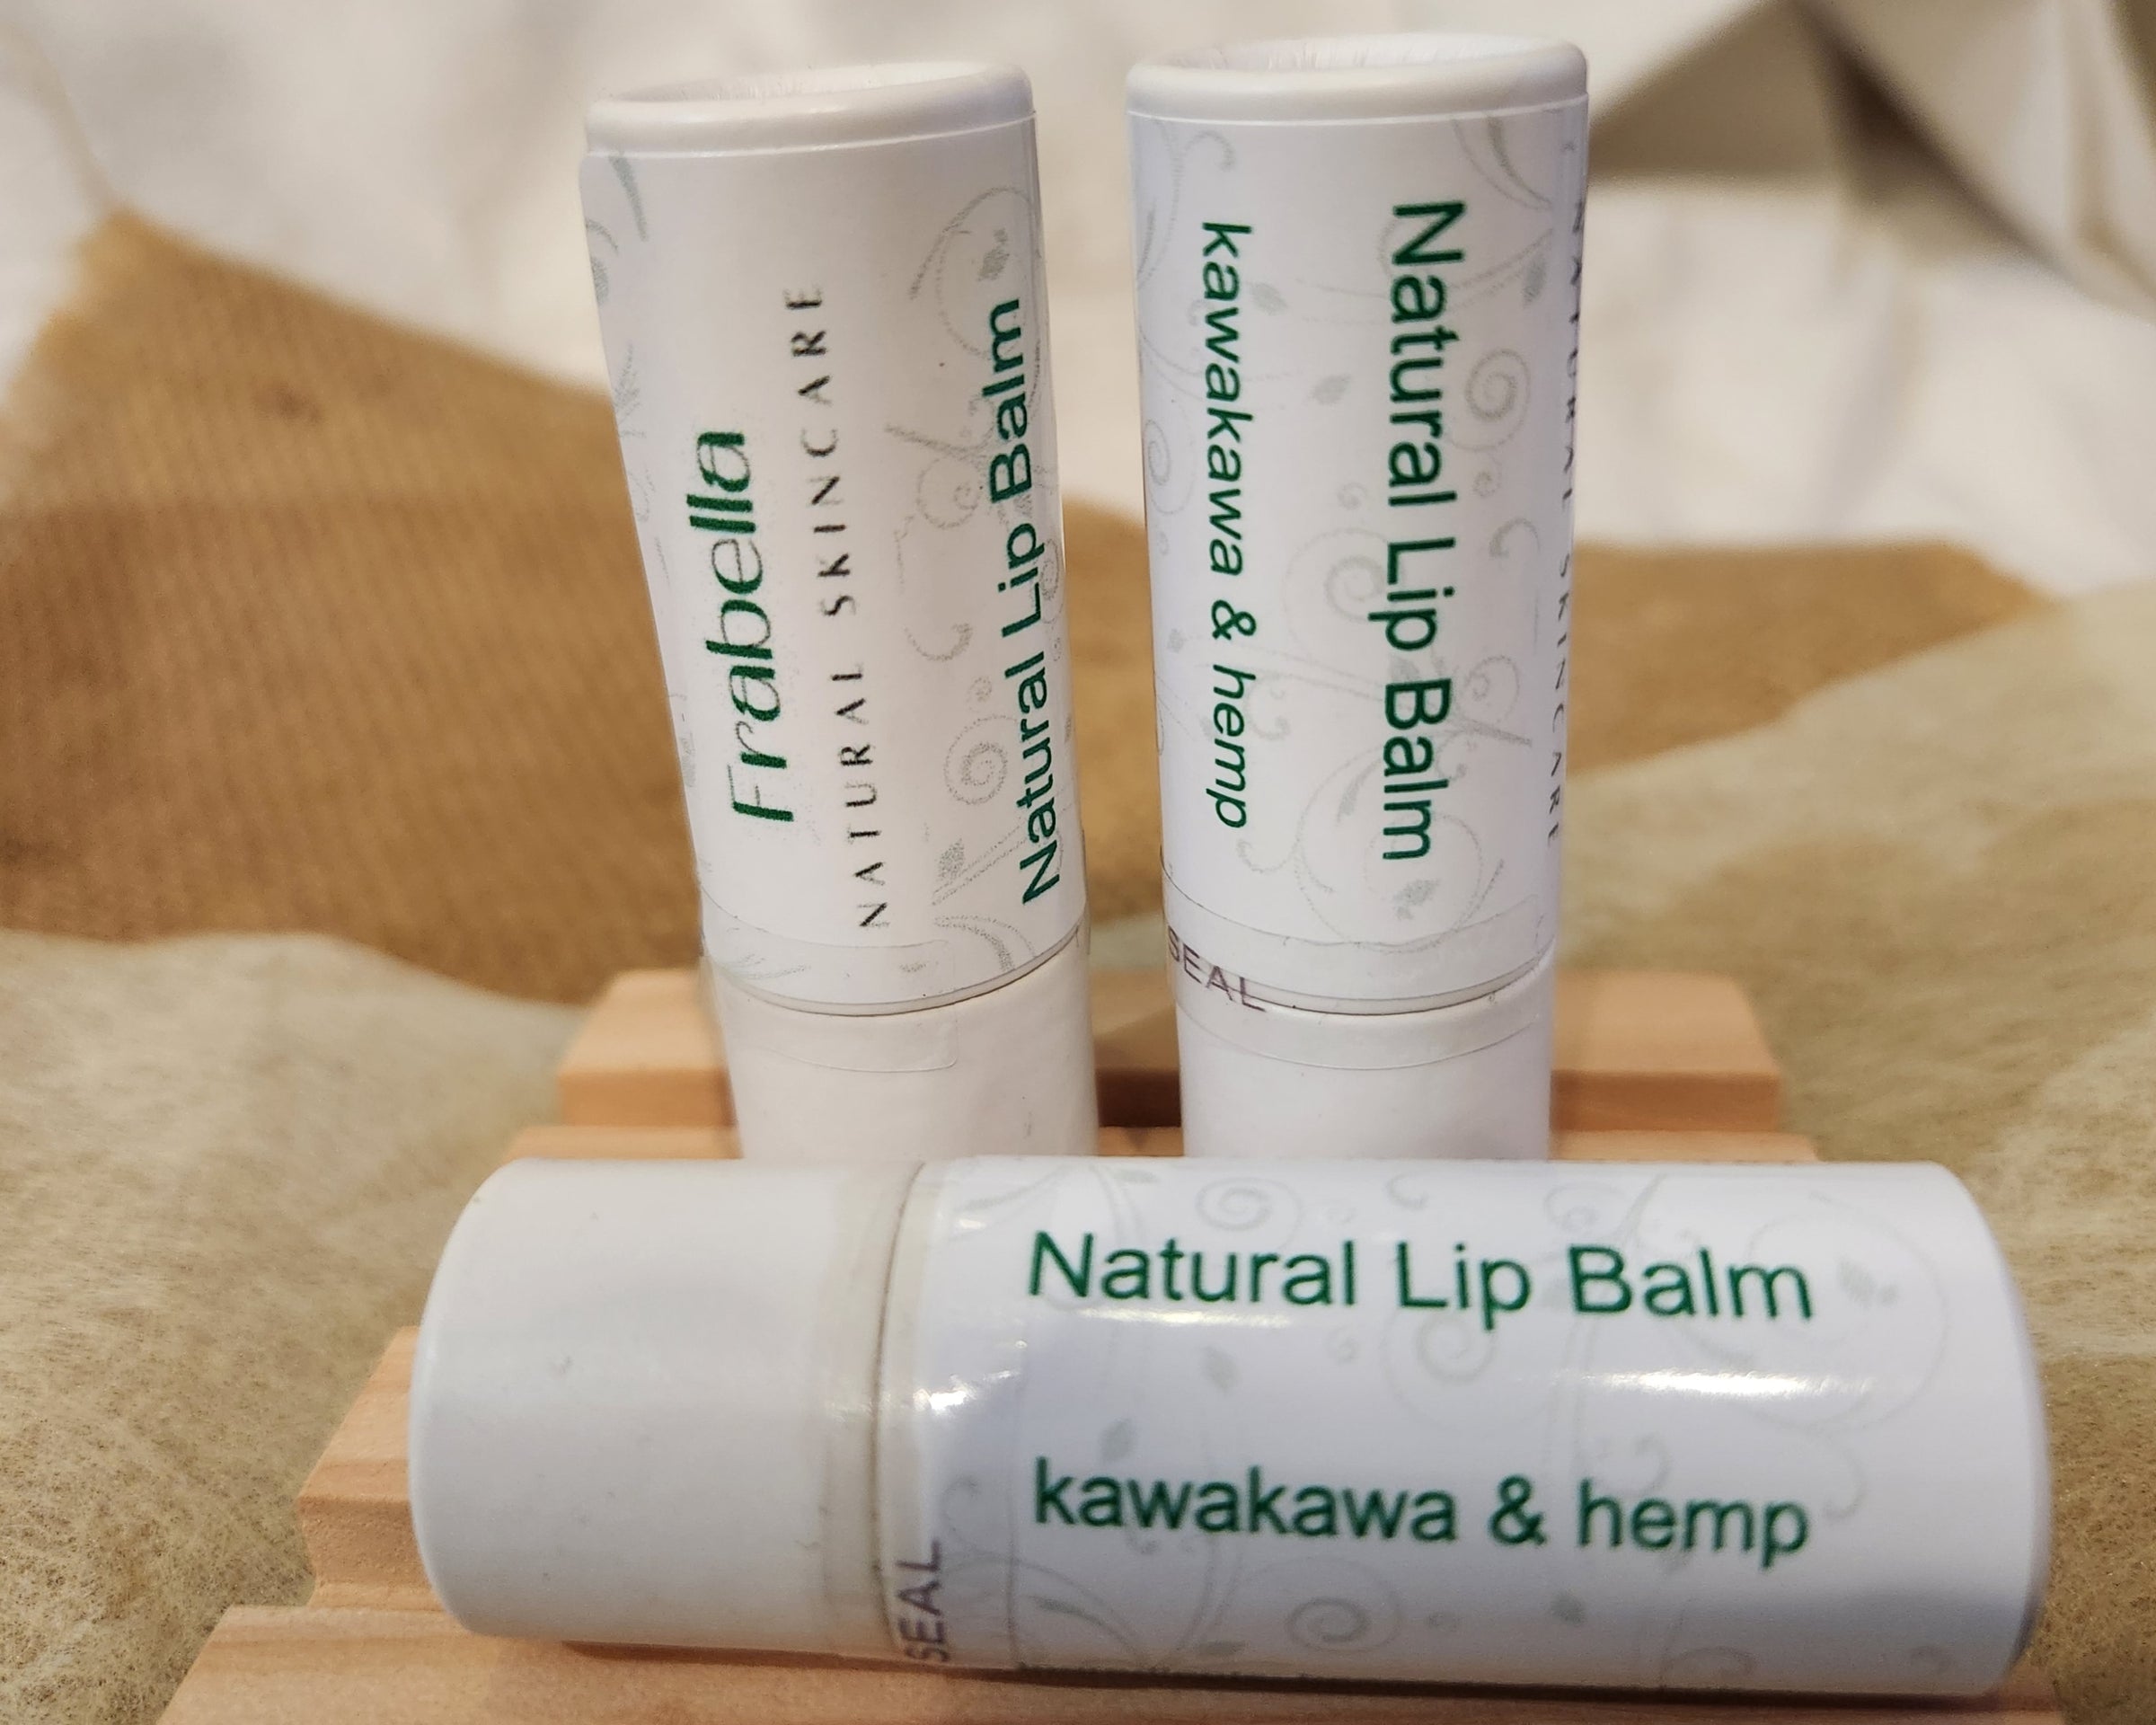 Natural Lip Balm with Kawakawa & Hemp Oil